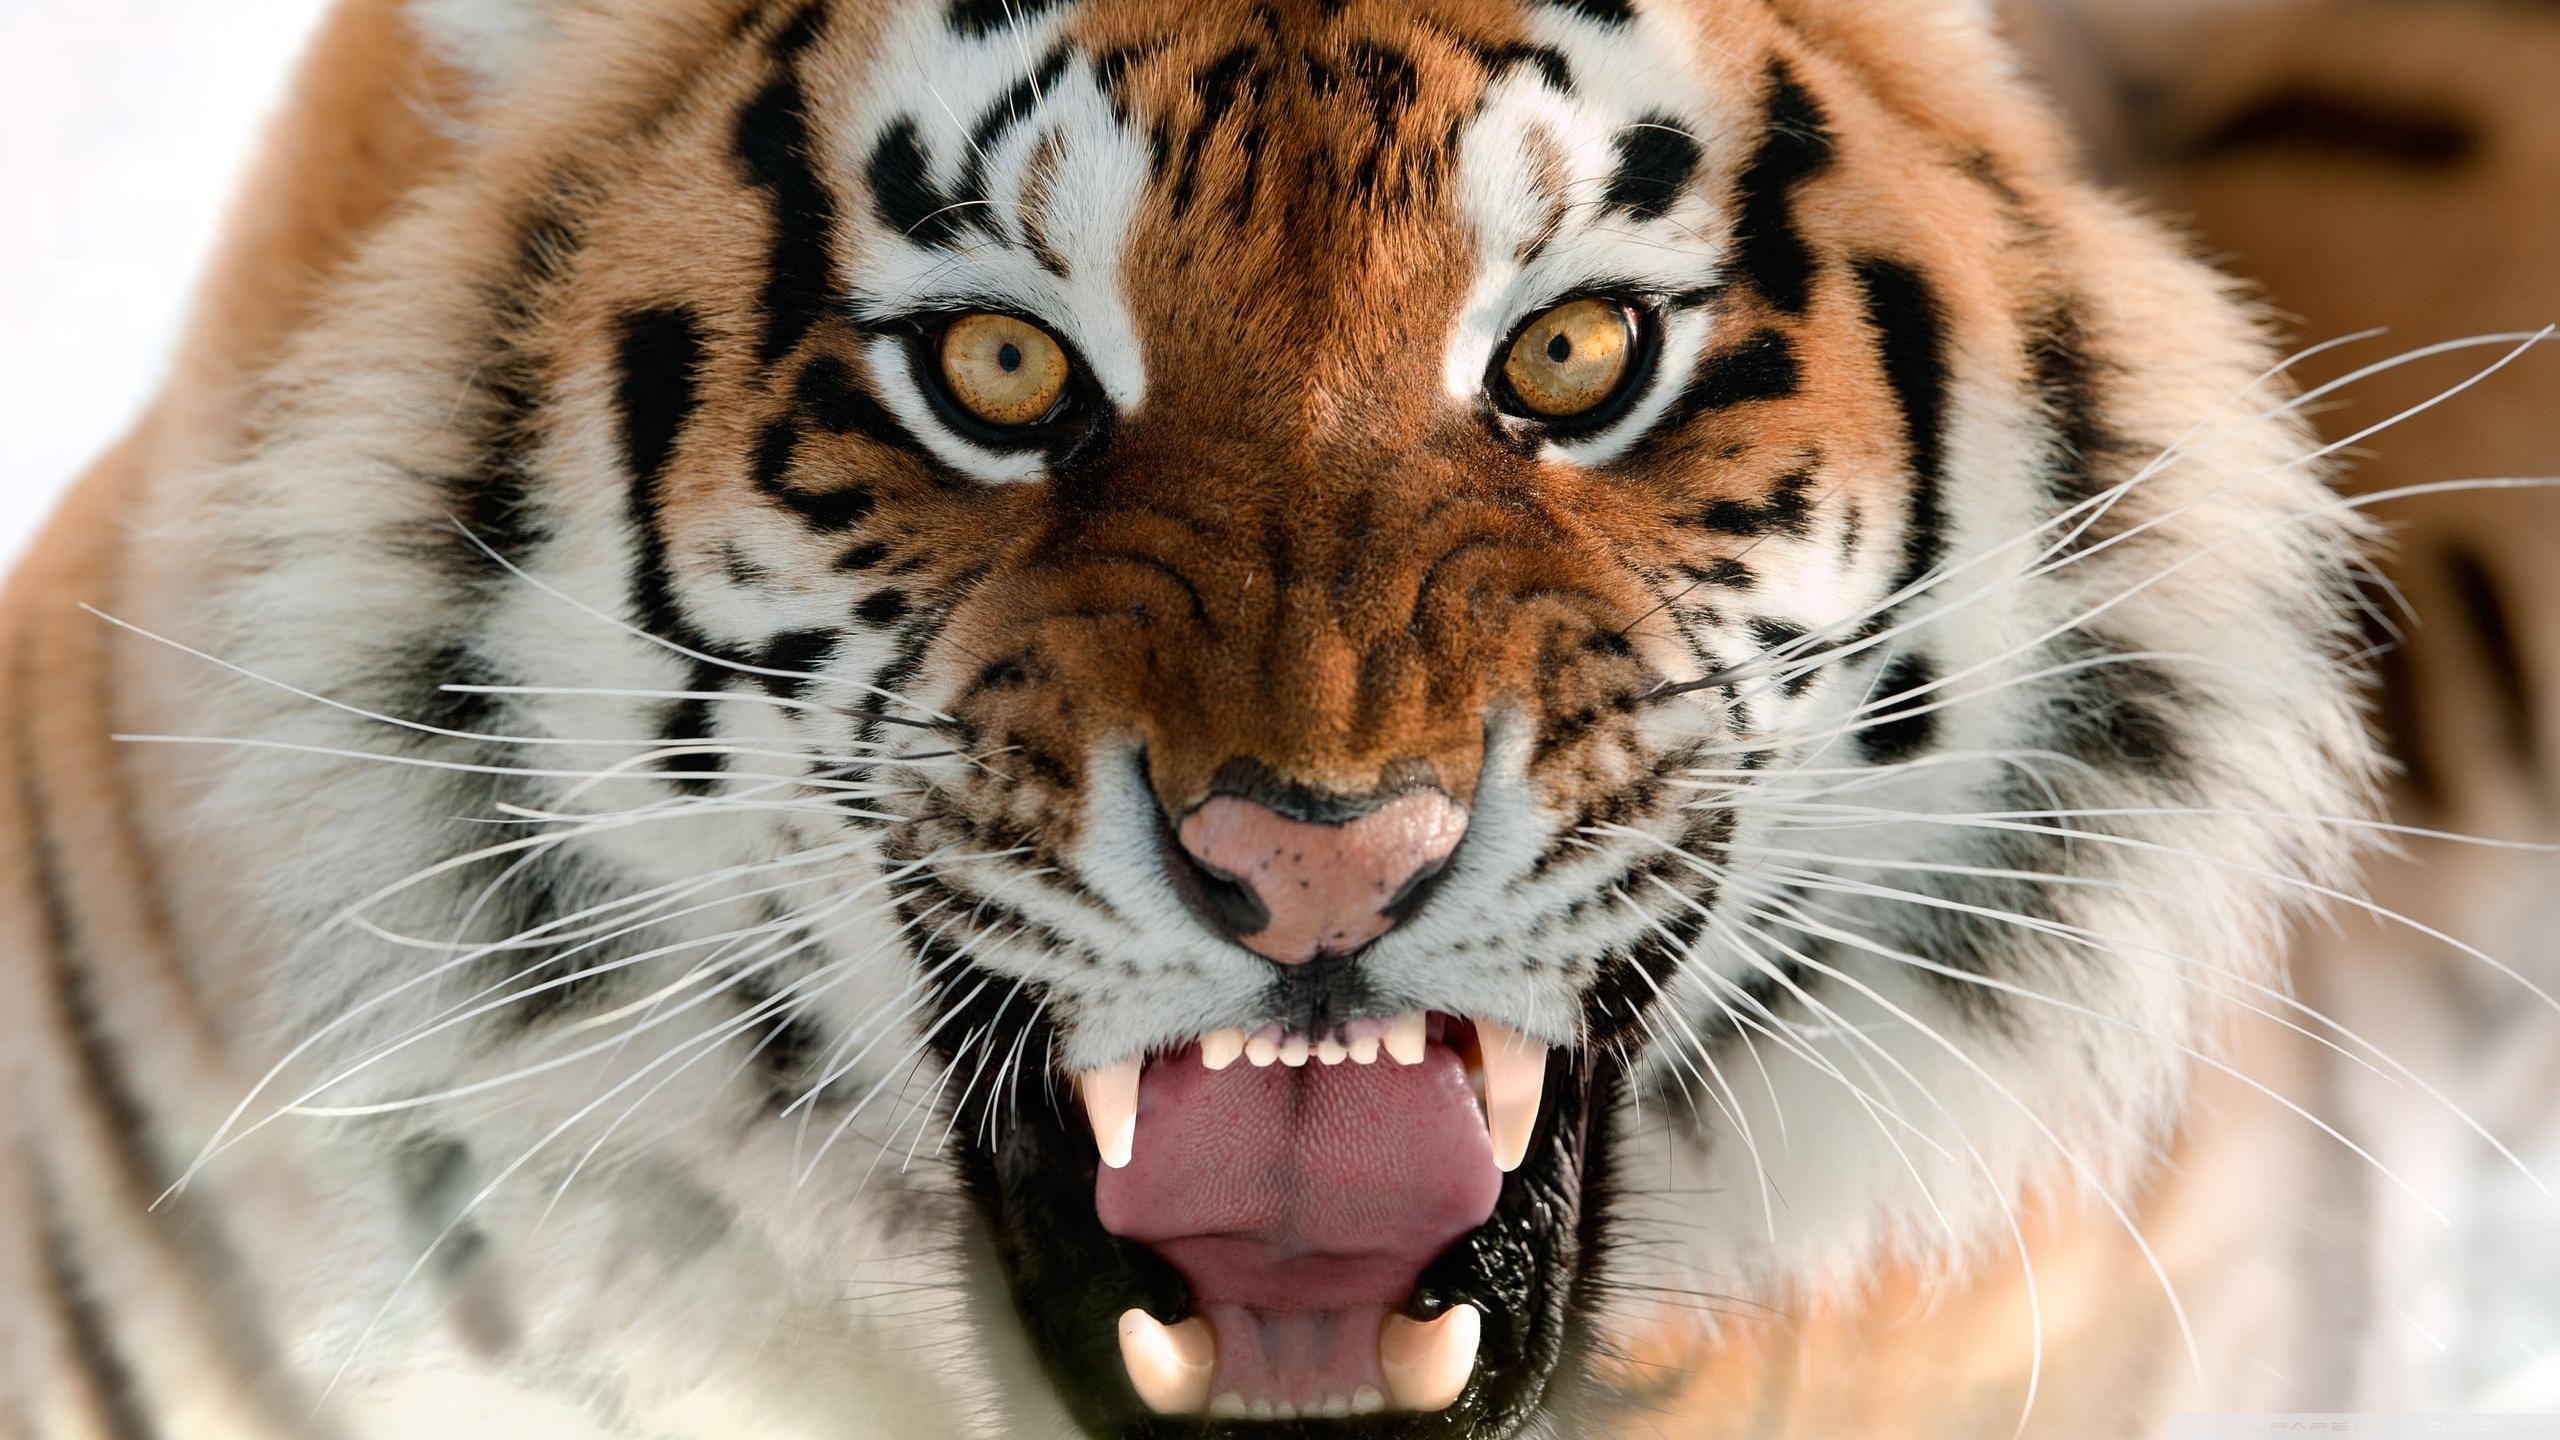 tiger roaring face